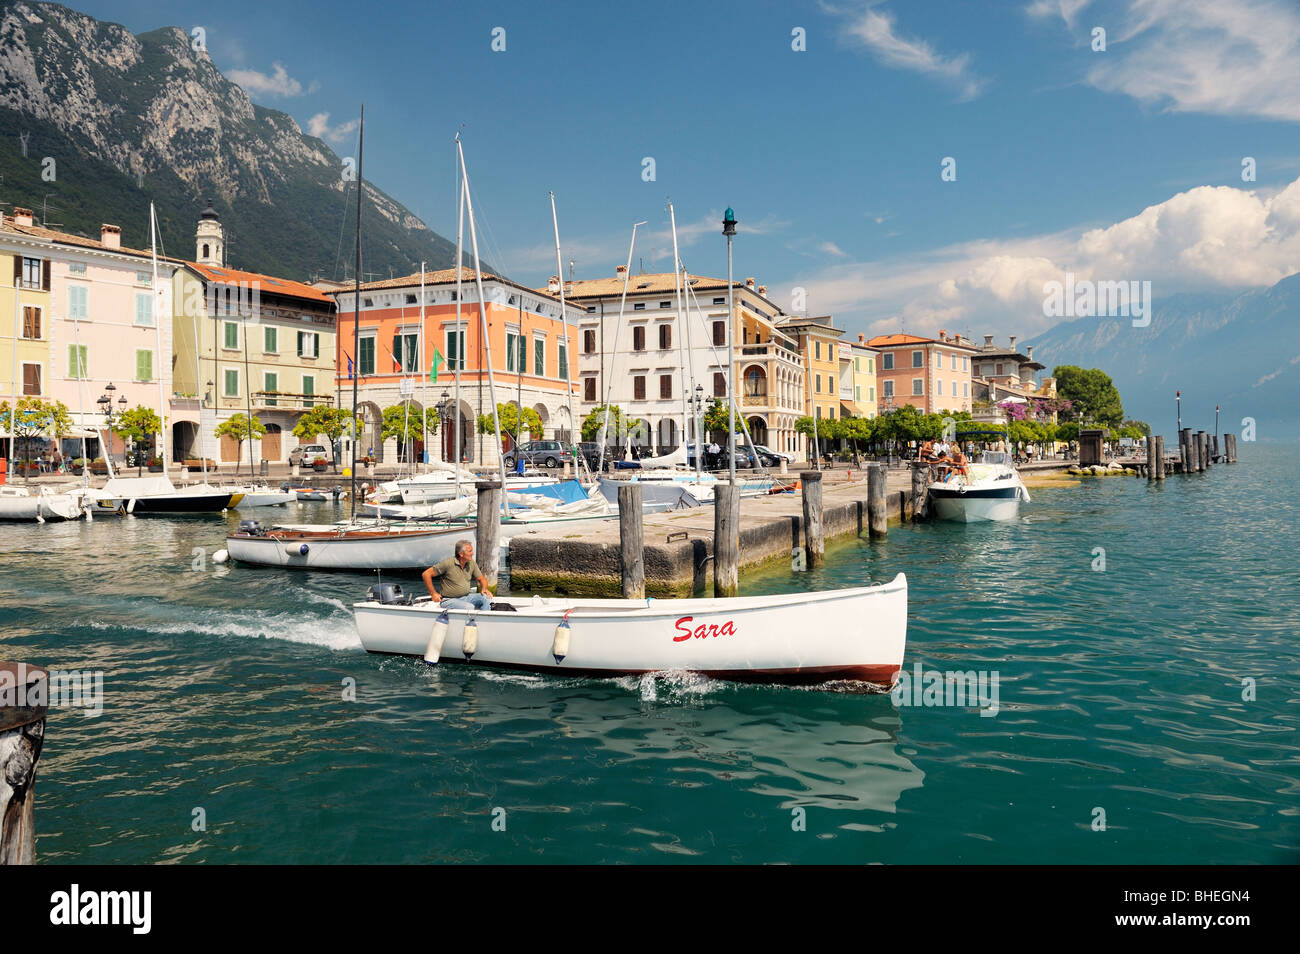 L'holiday resort comune di Gargnano sul Lago di Garda, Lombardia, Italia. Barca di lasciare il porto. Lago di Garda. Foto Stock